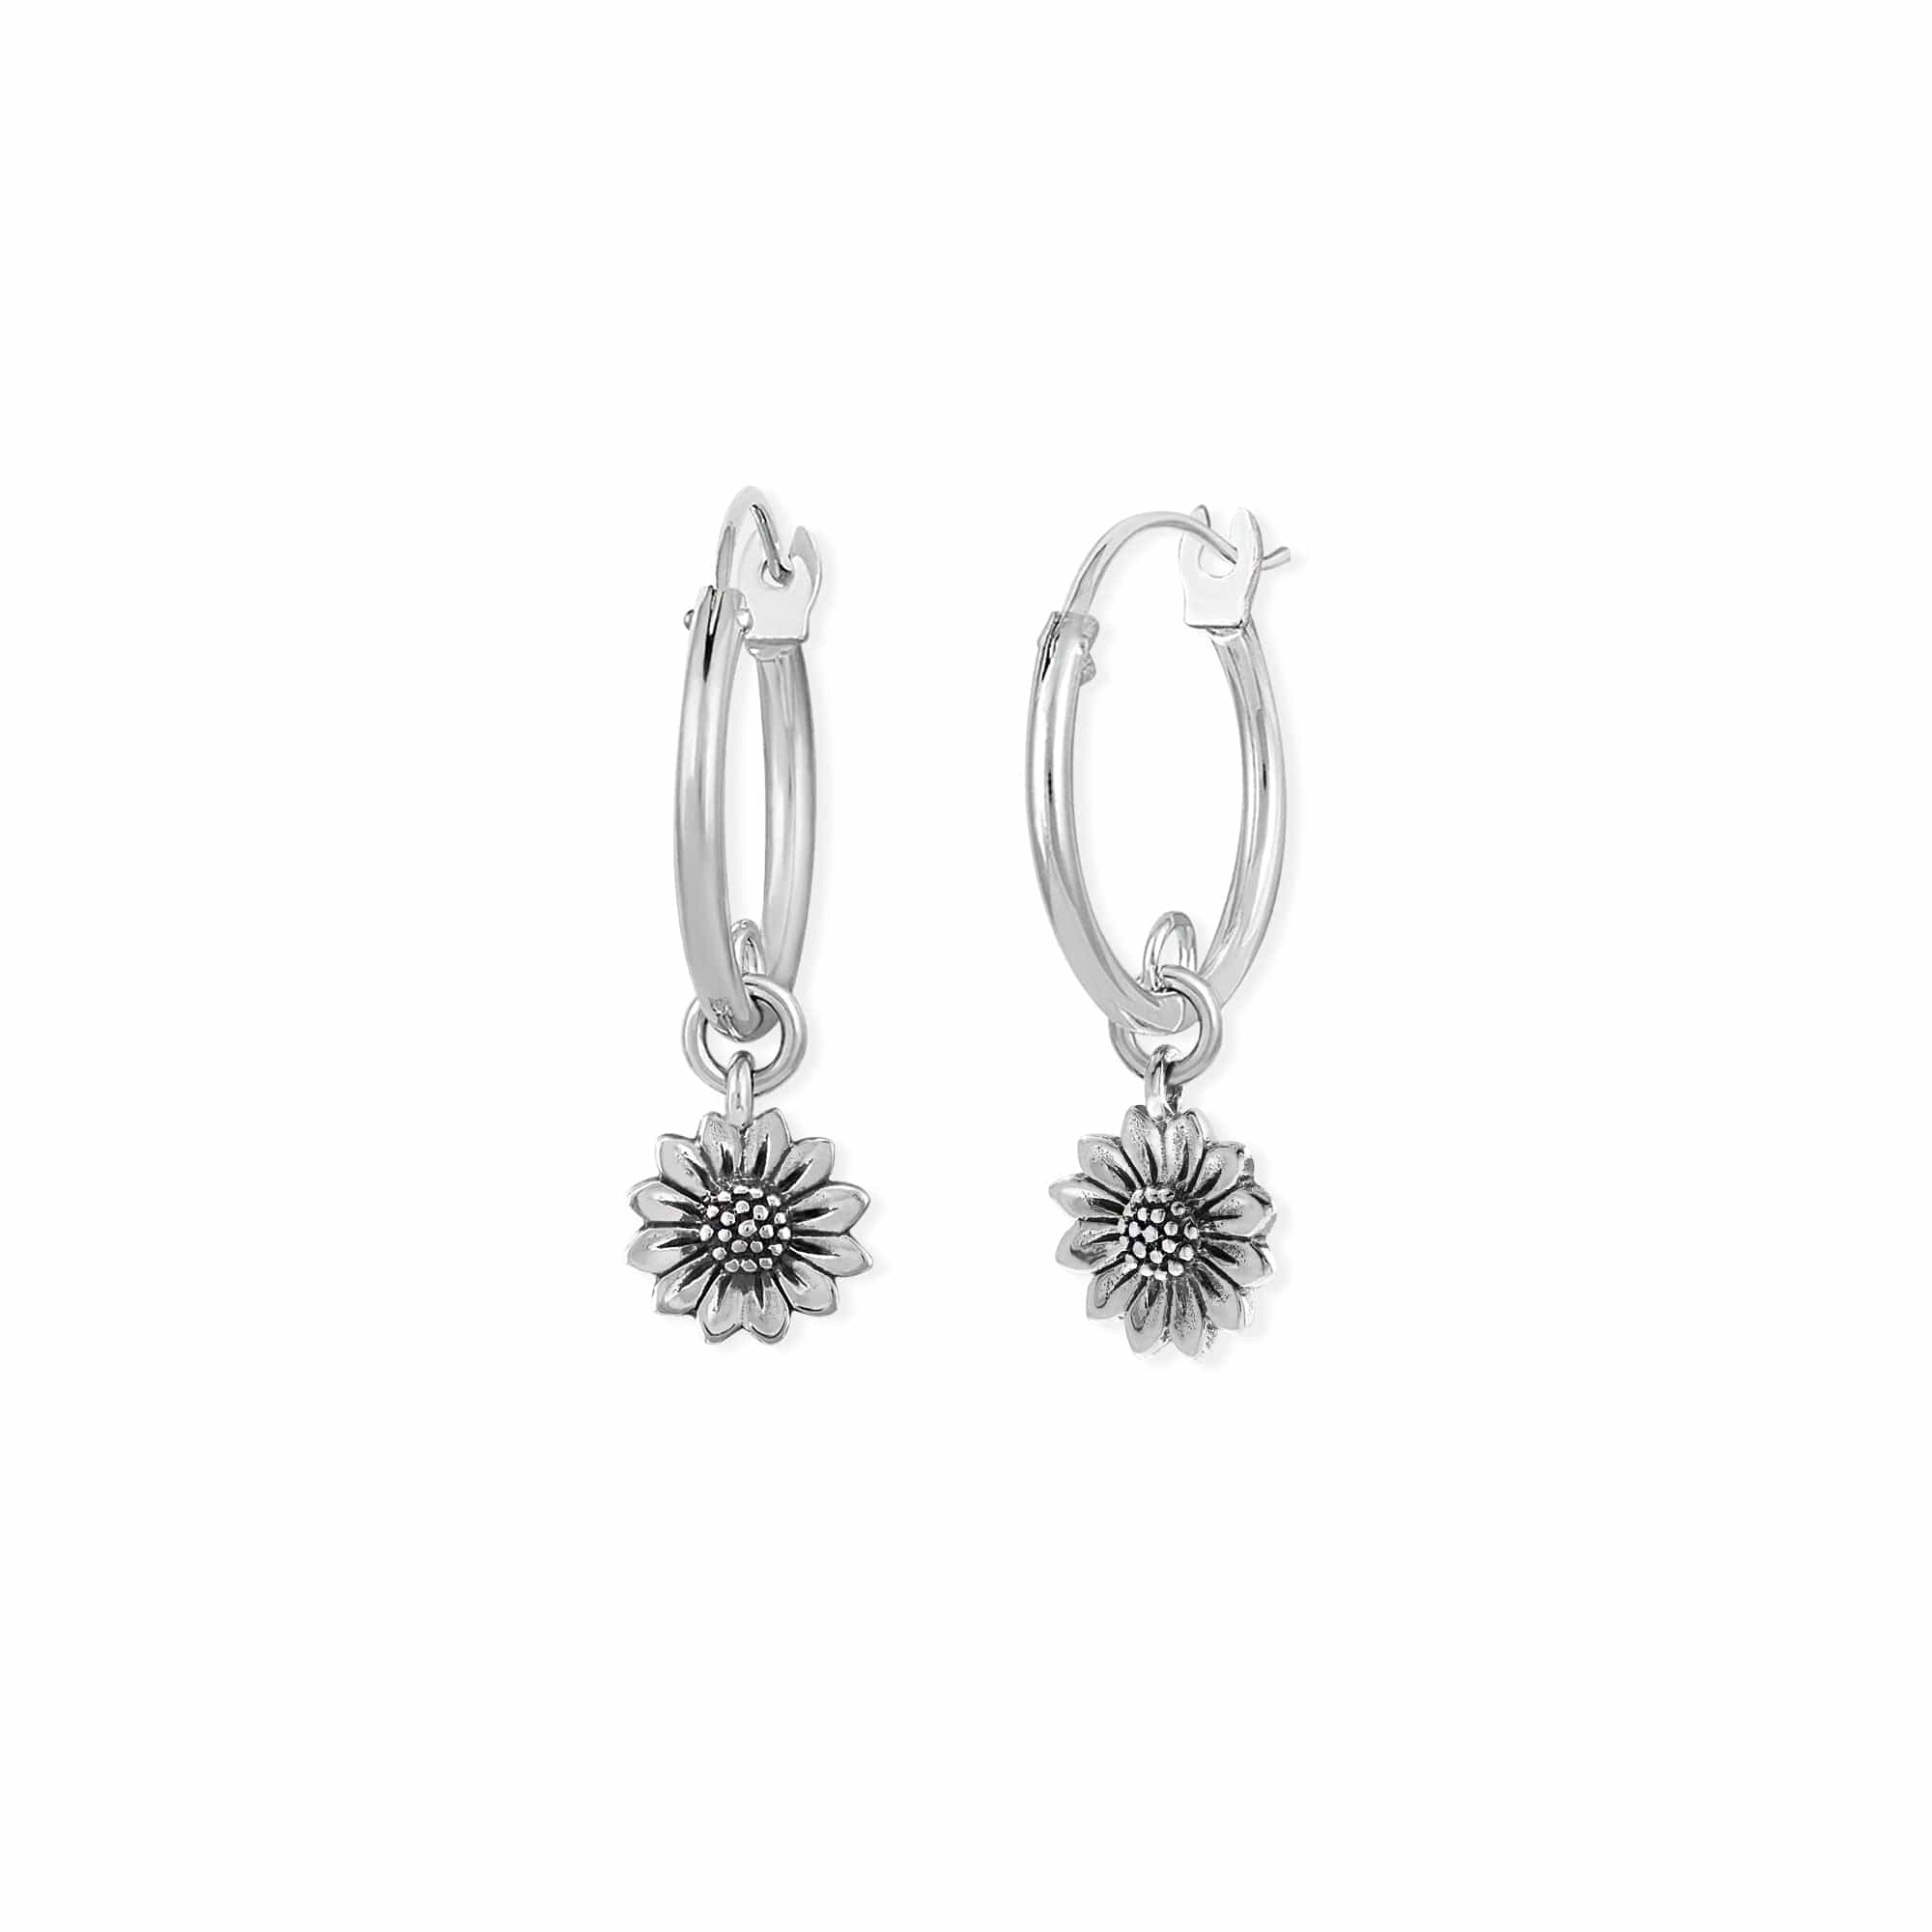 Boma Jewelry Earrings Sunflower Hoops